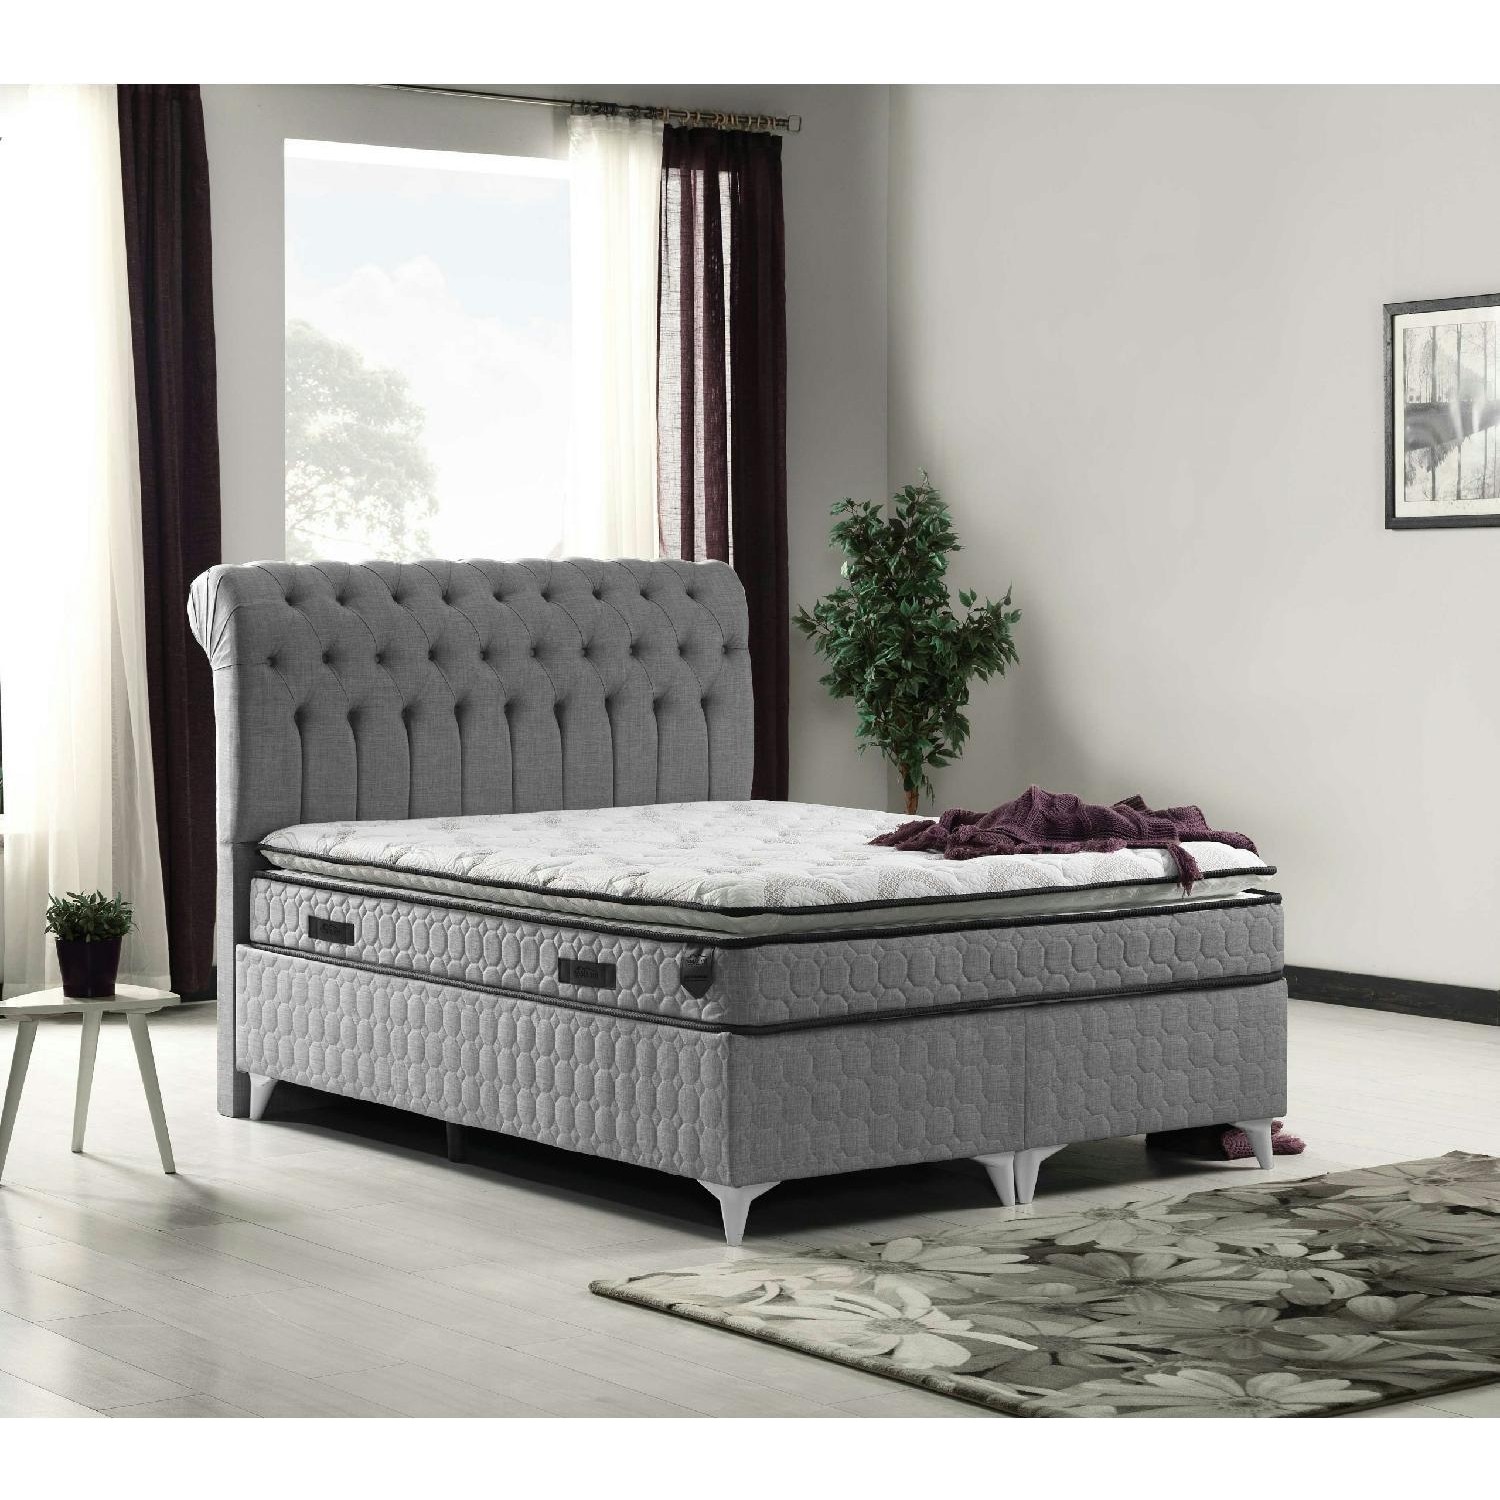 Bubu Home Elegance Baza + Yatak + Başlık 160 x 200 cm Set Fiyatı